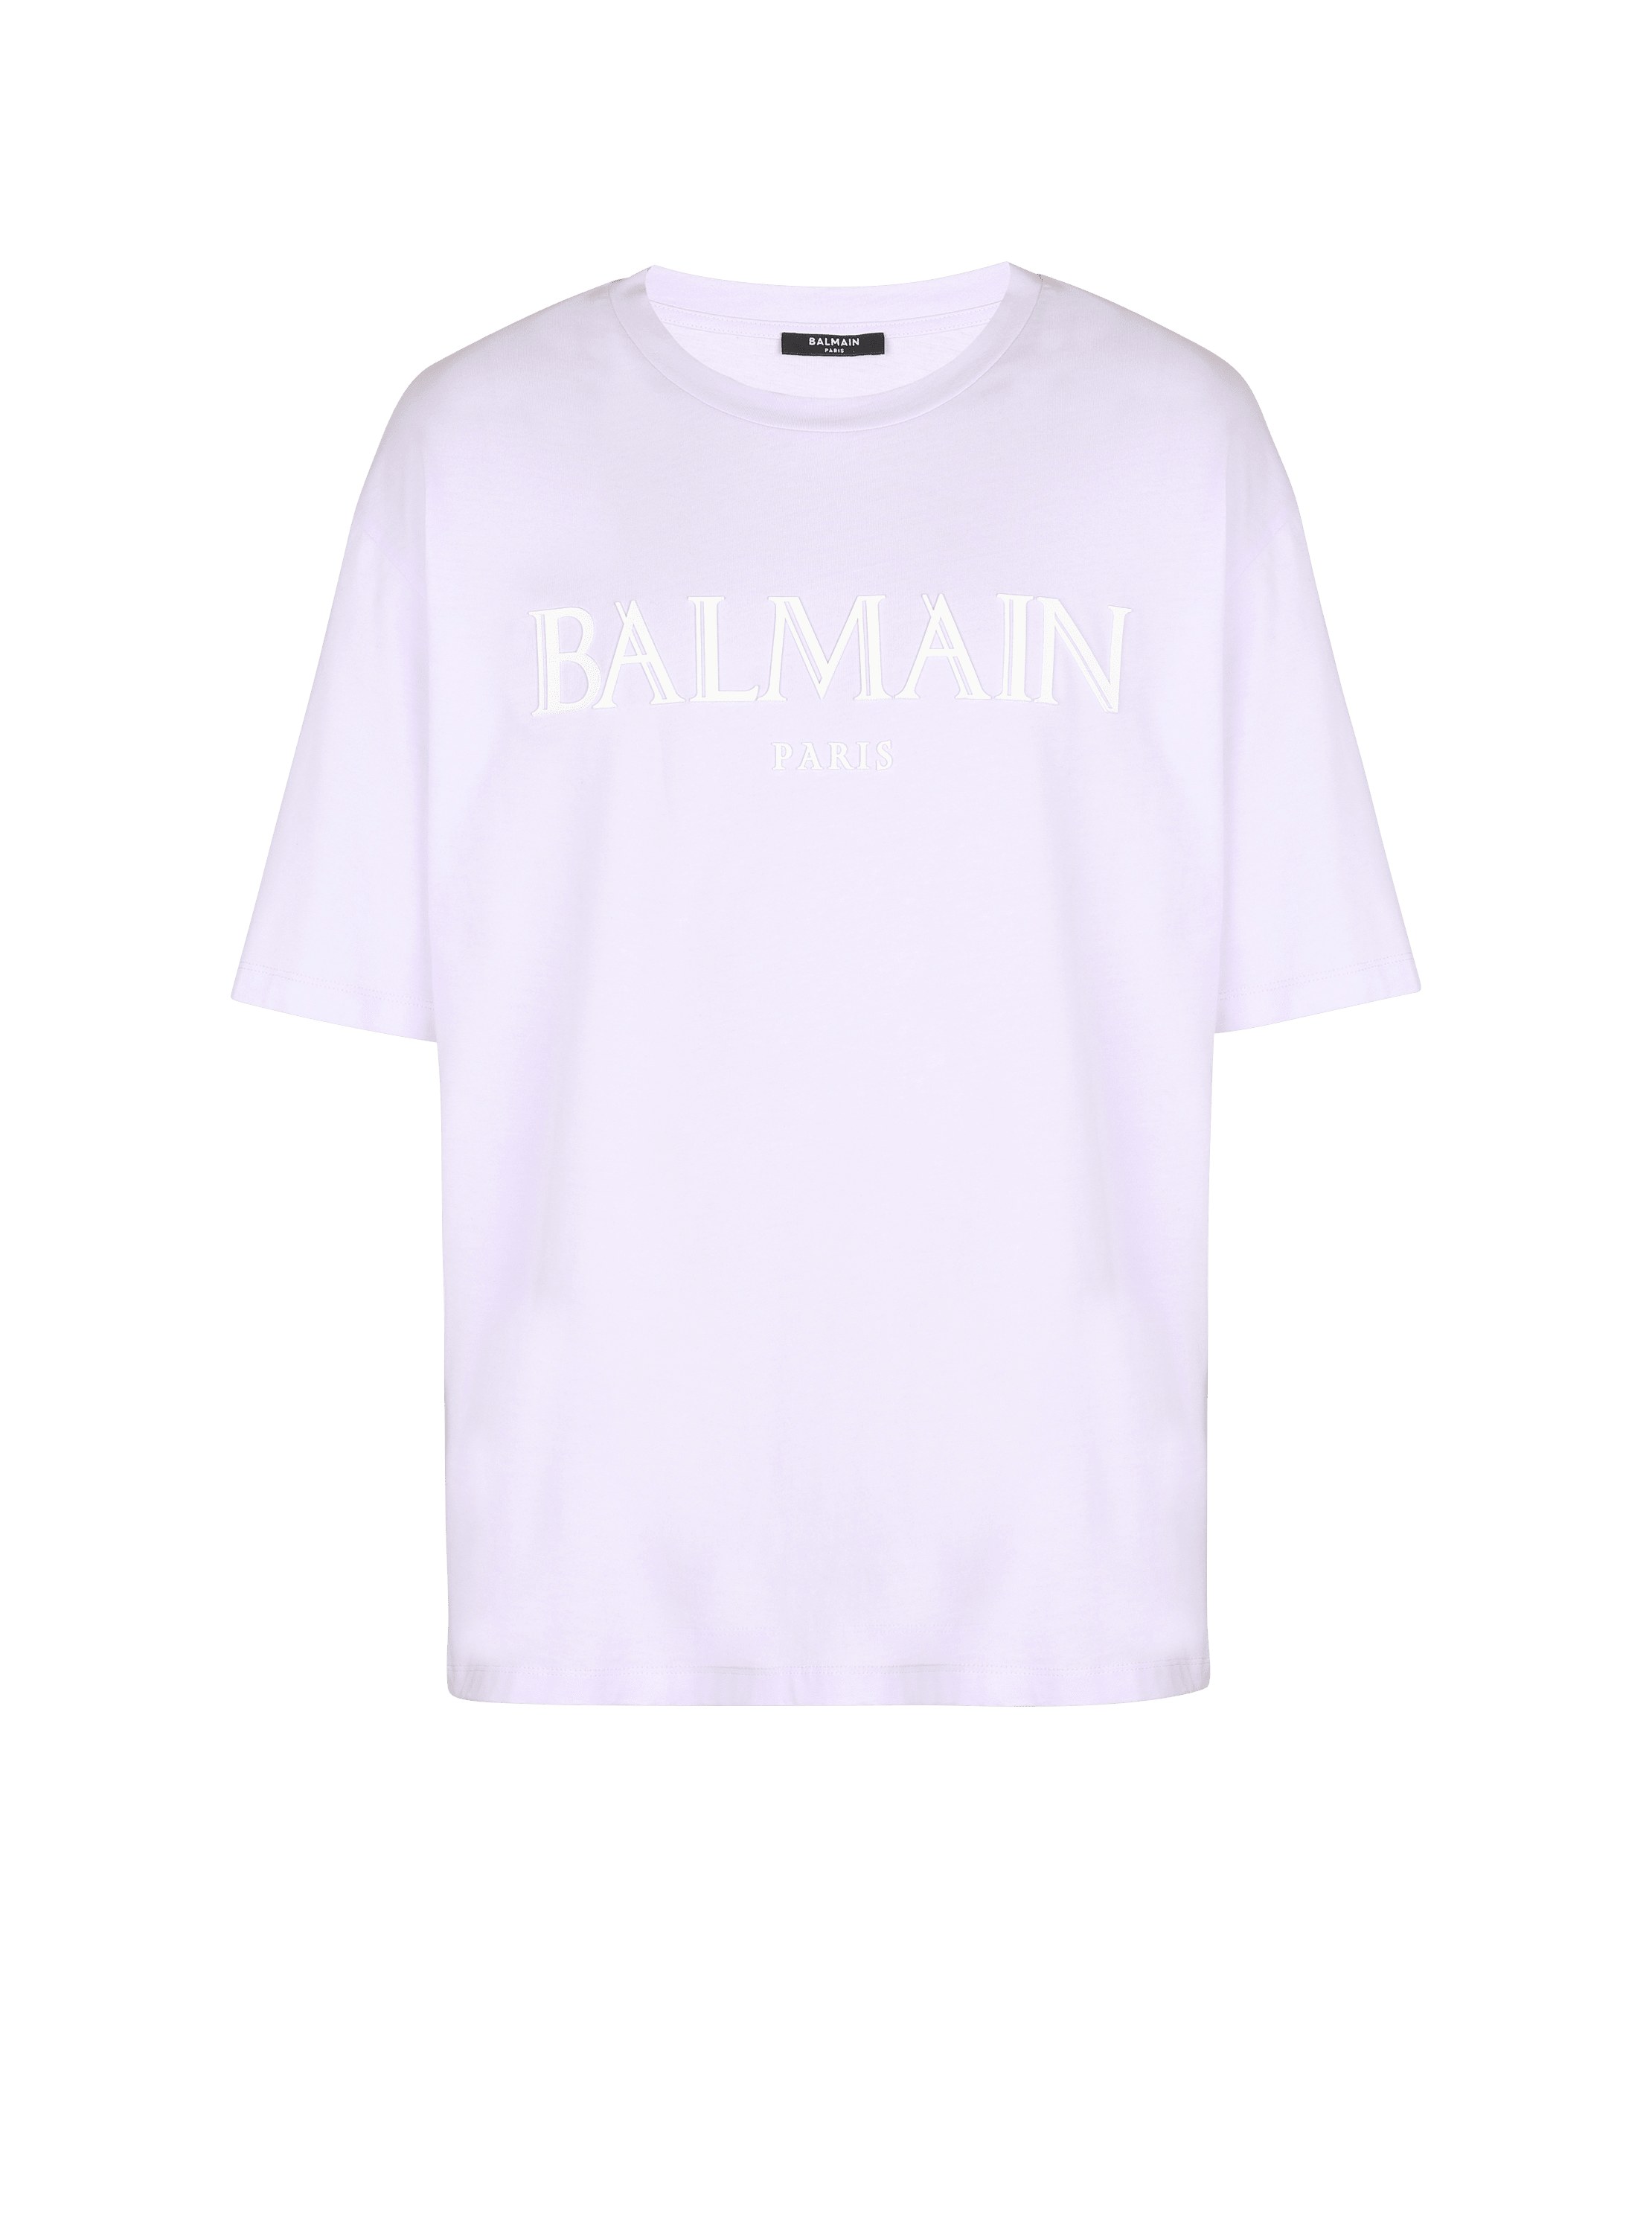 Camiseta oversize con logotipo de Balmain con tipografía romana en caucho